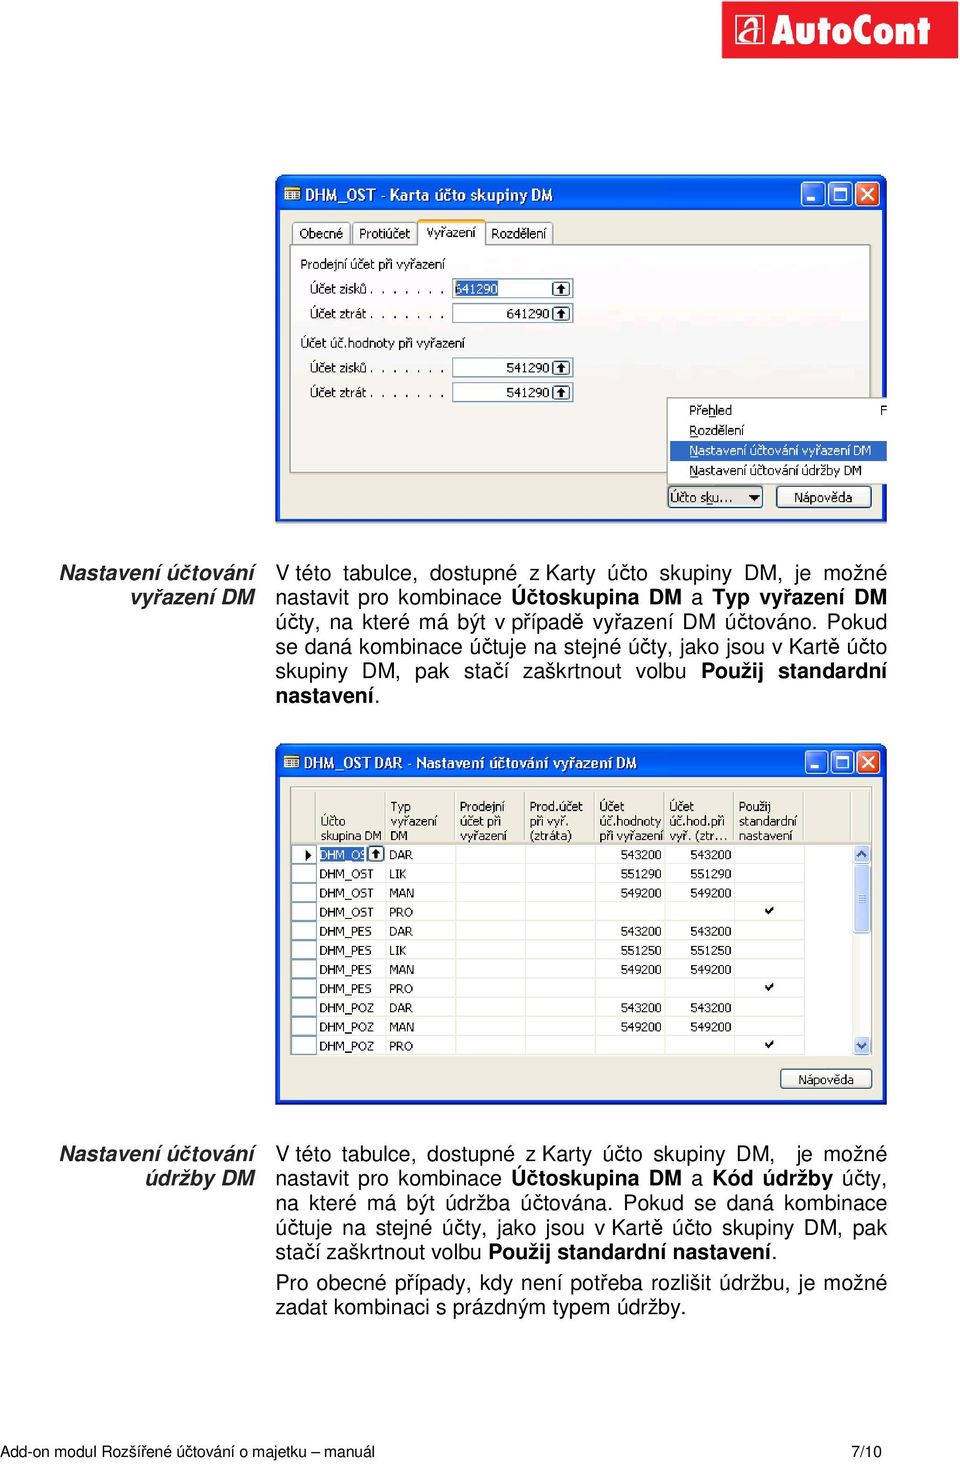 Nastavení účtování údržby DM V této tabulce, dostupné z Karty účto skupiny DM, je možné nastavit pro kombinace Účtoskupina DM a Kód údržby účty, na které má být údržba účtována.